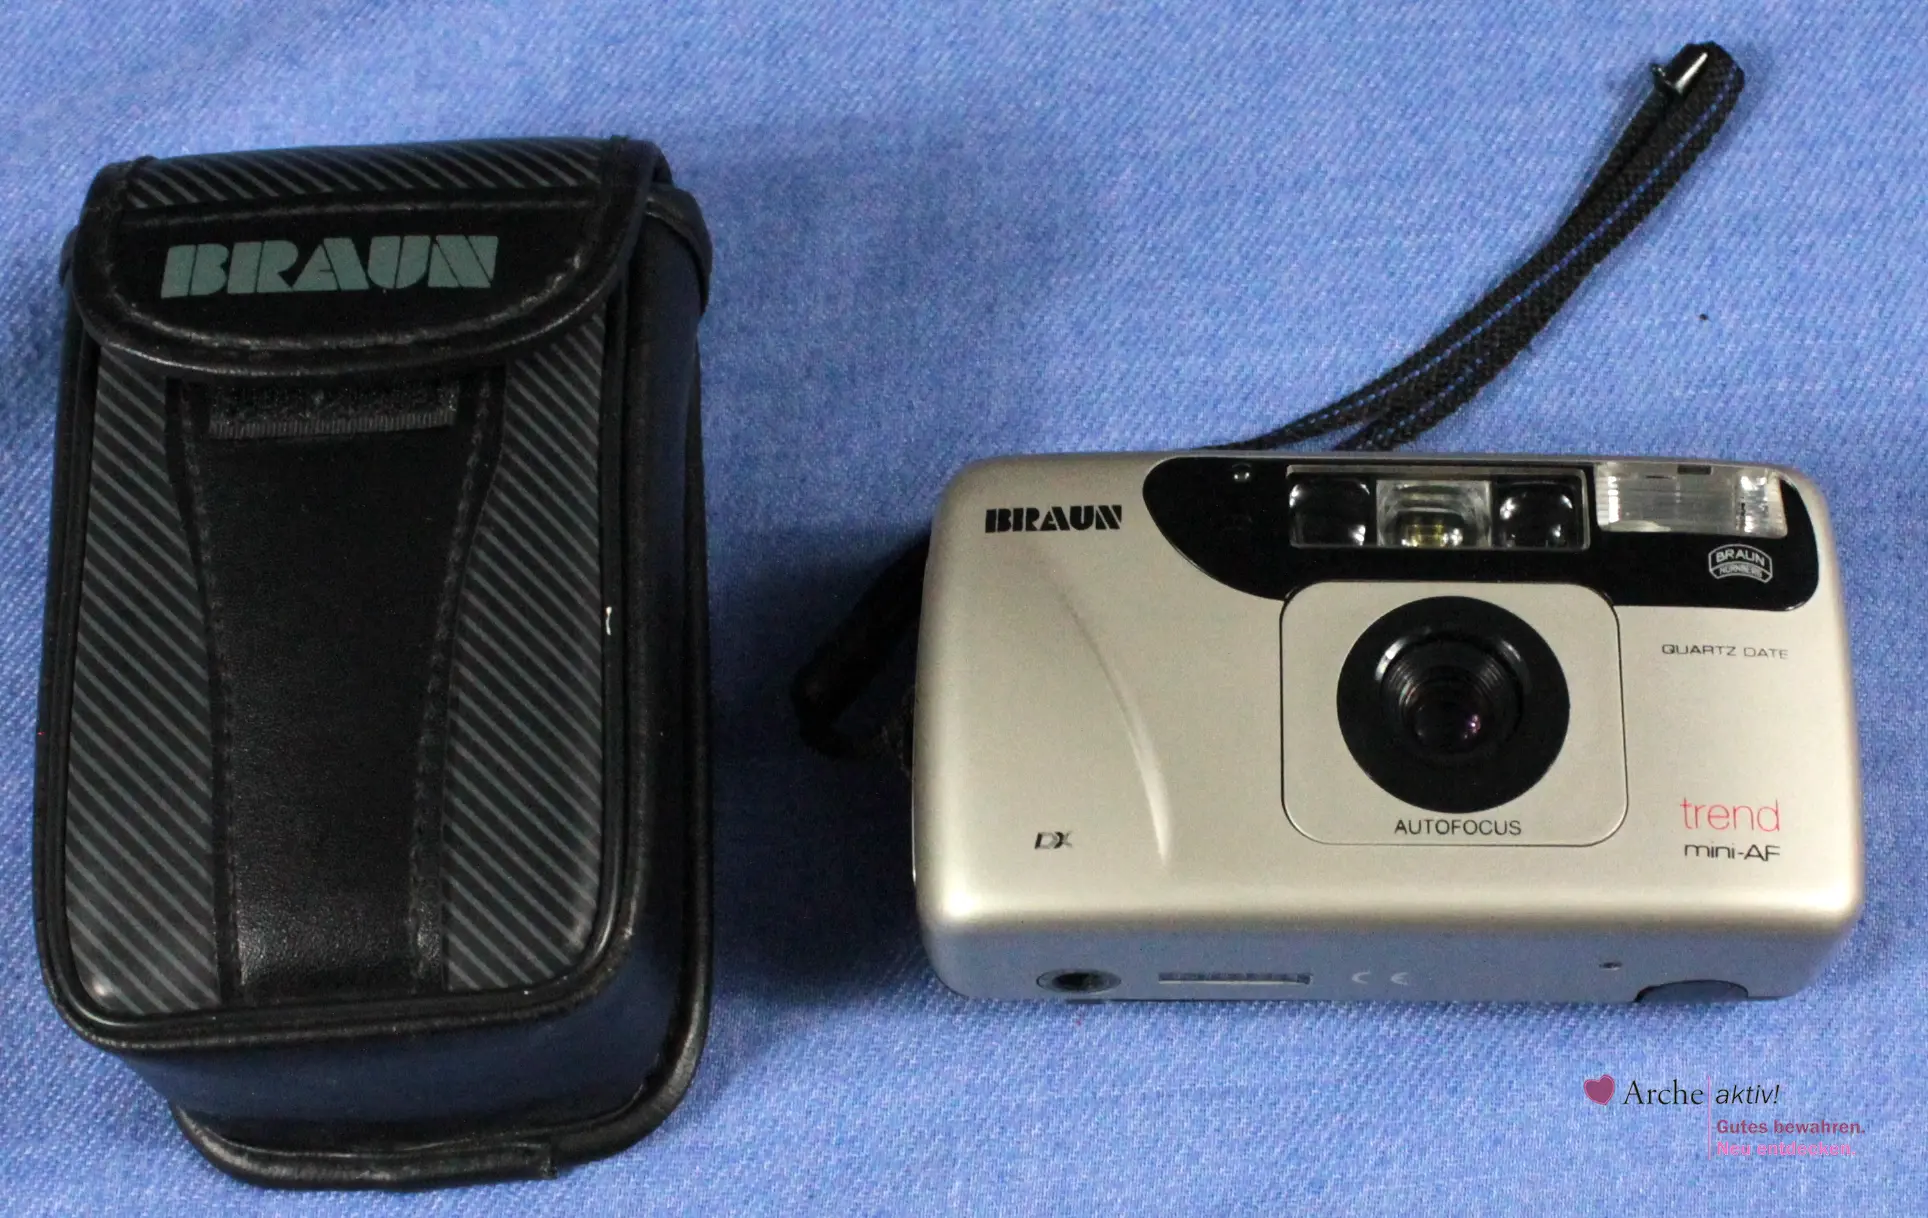 Braun trend mini-AF - Kompaktkamera, gebraucht